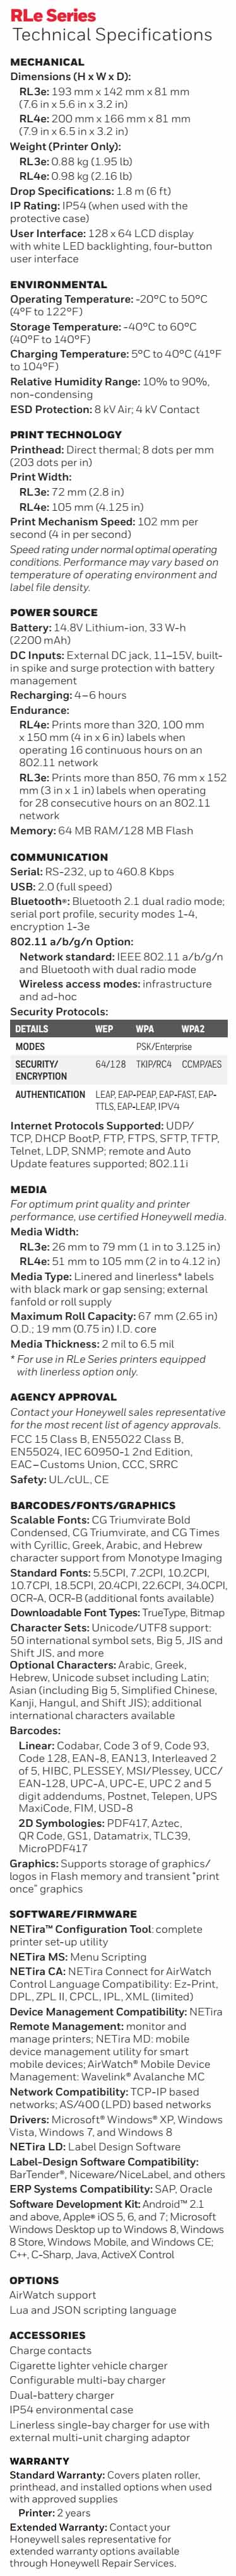 Hoja de datos de la impresora de etiquetas móvil Honeywell RL3e RL4e